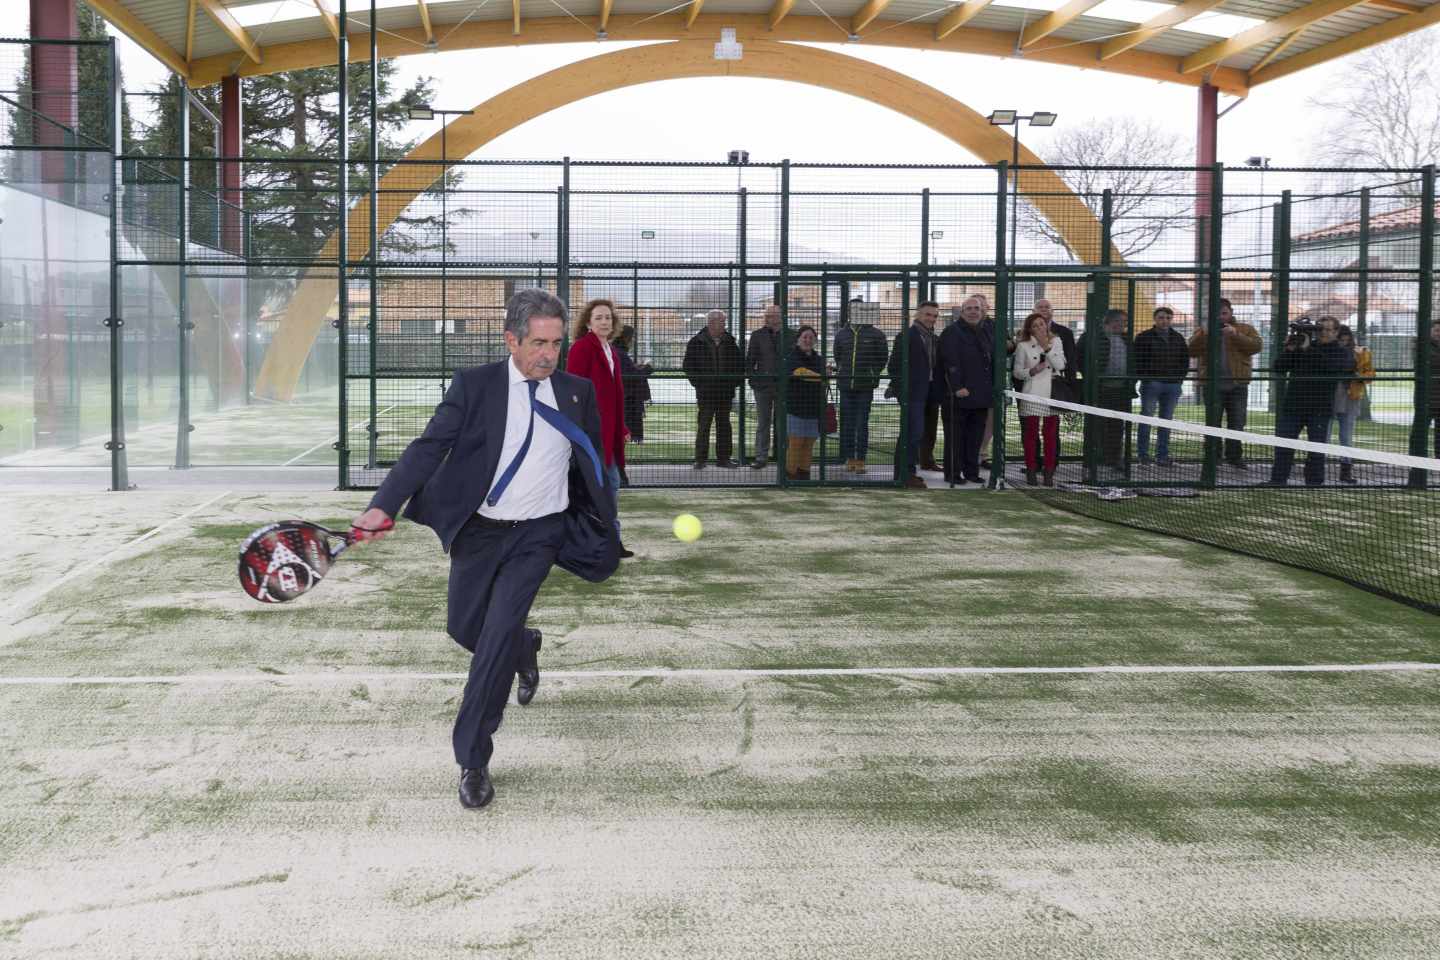 Miguel Ángel Revilla, jugando al pádel en la inauguración de un centro deportivo.